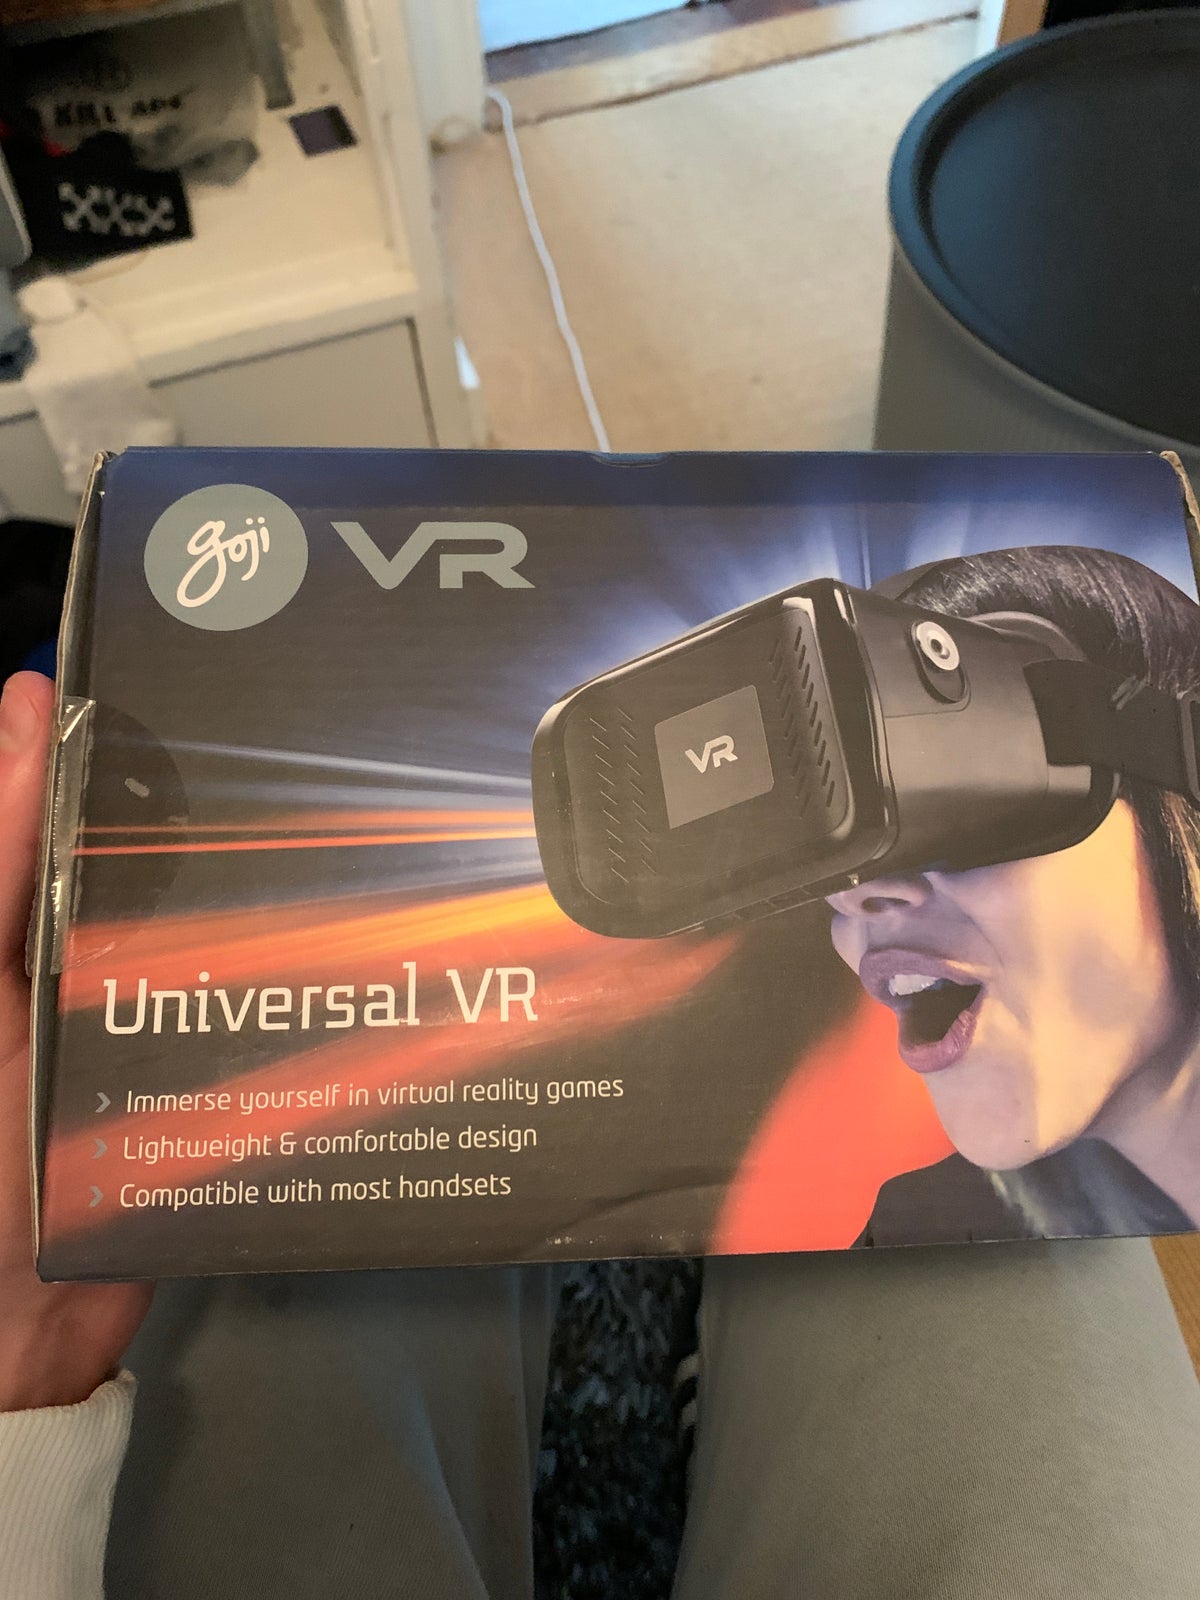 Andet, Goji Universal VR, Perfekt – dba.dk Køb og Salg af Nyt og Brugt